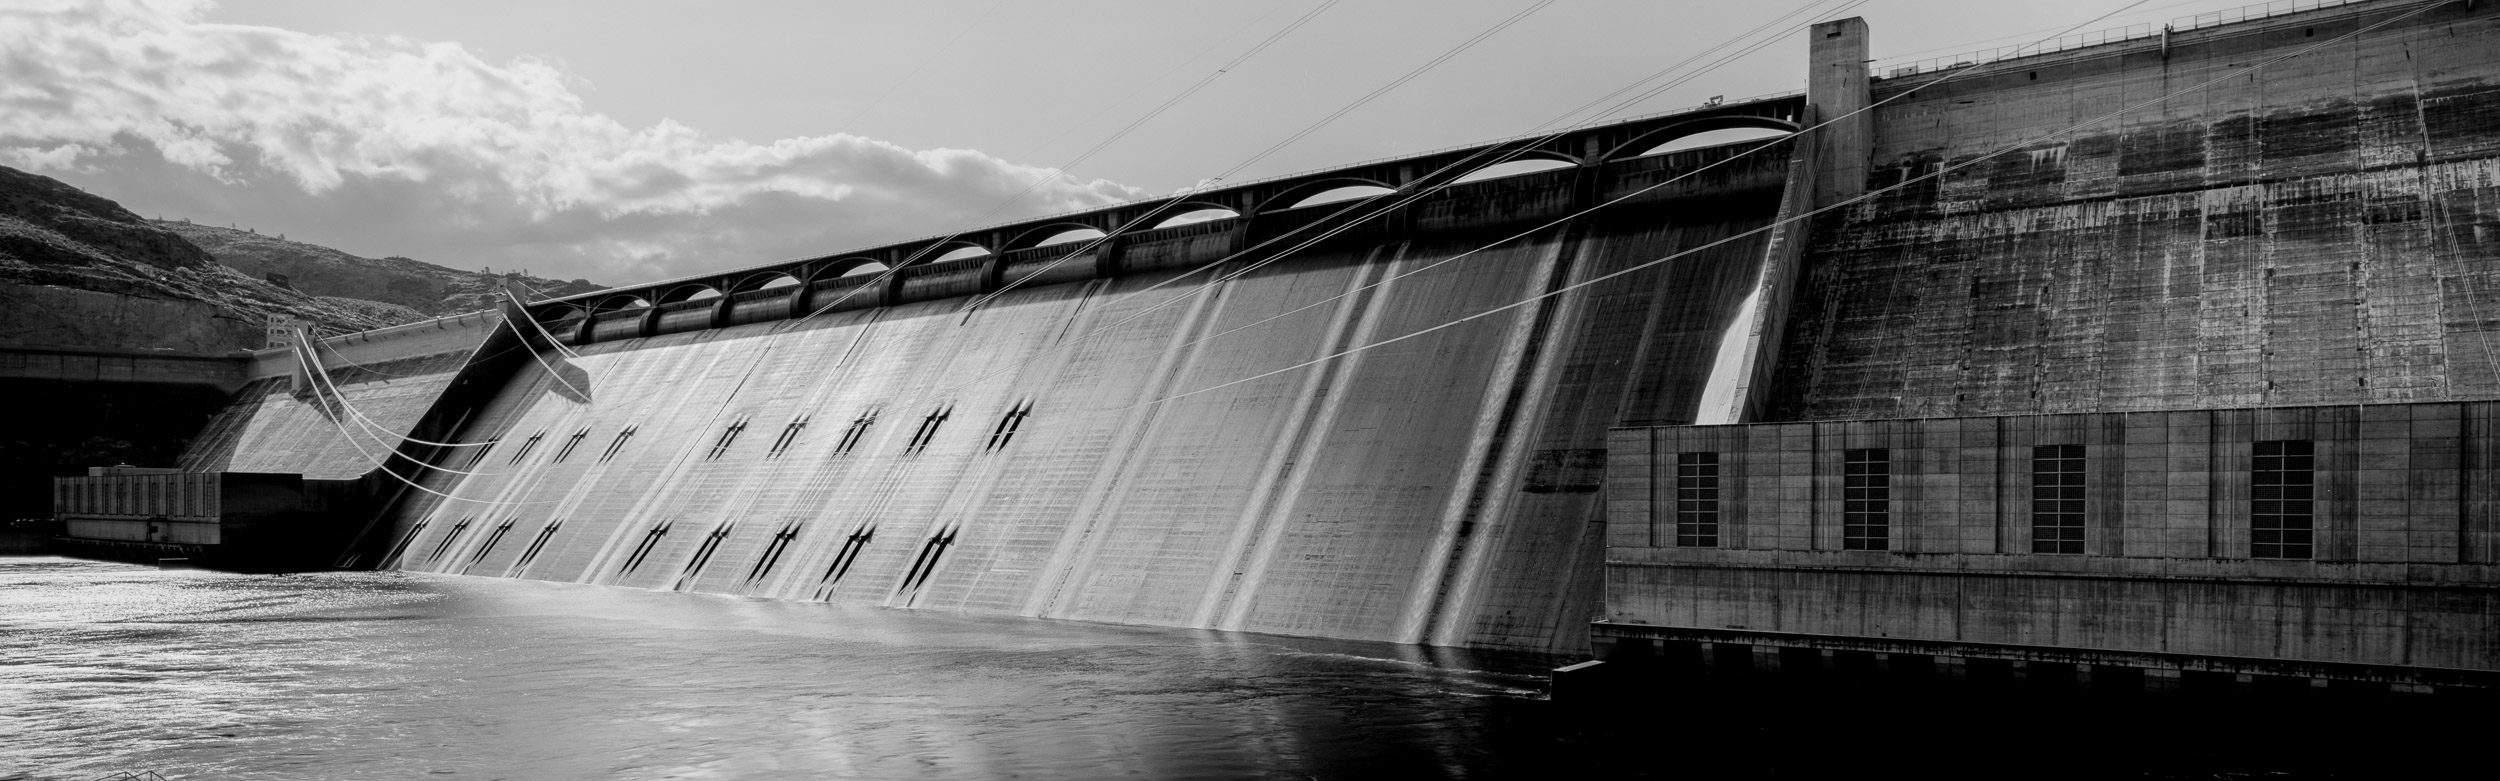 Grand Cooley Dam Washington